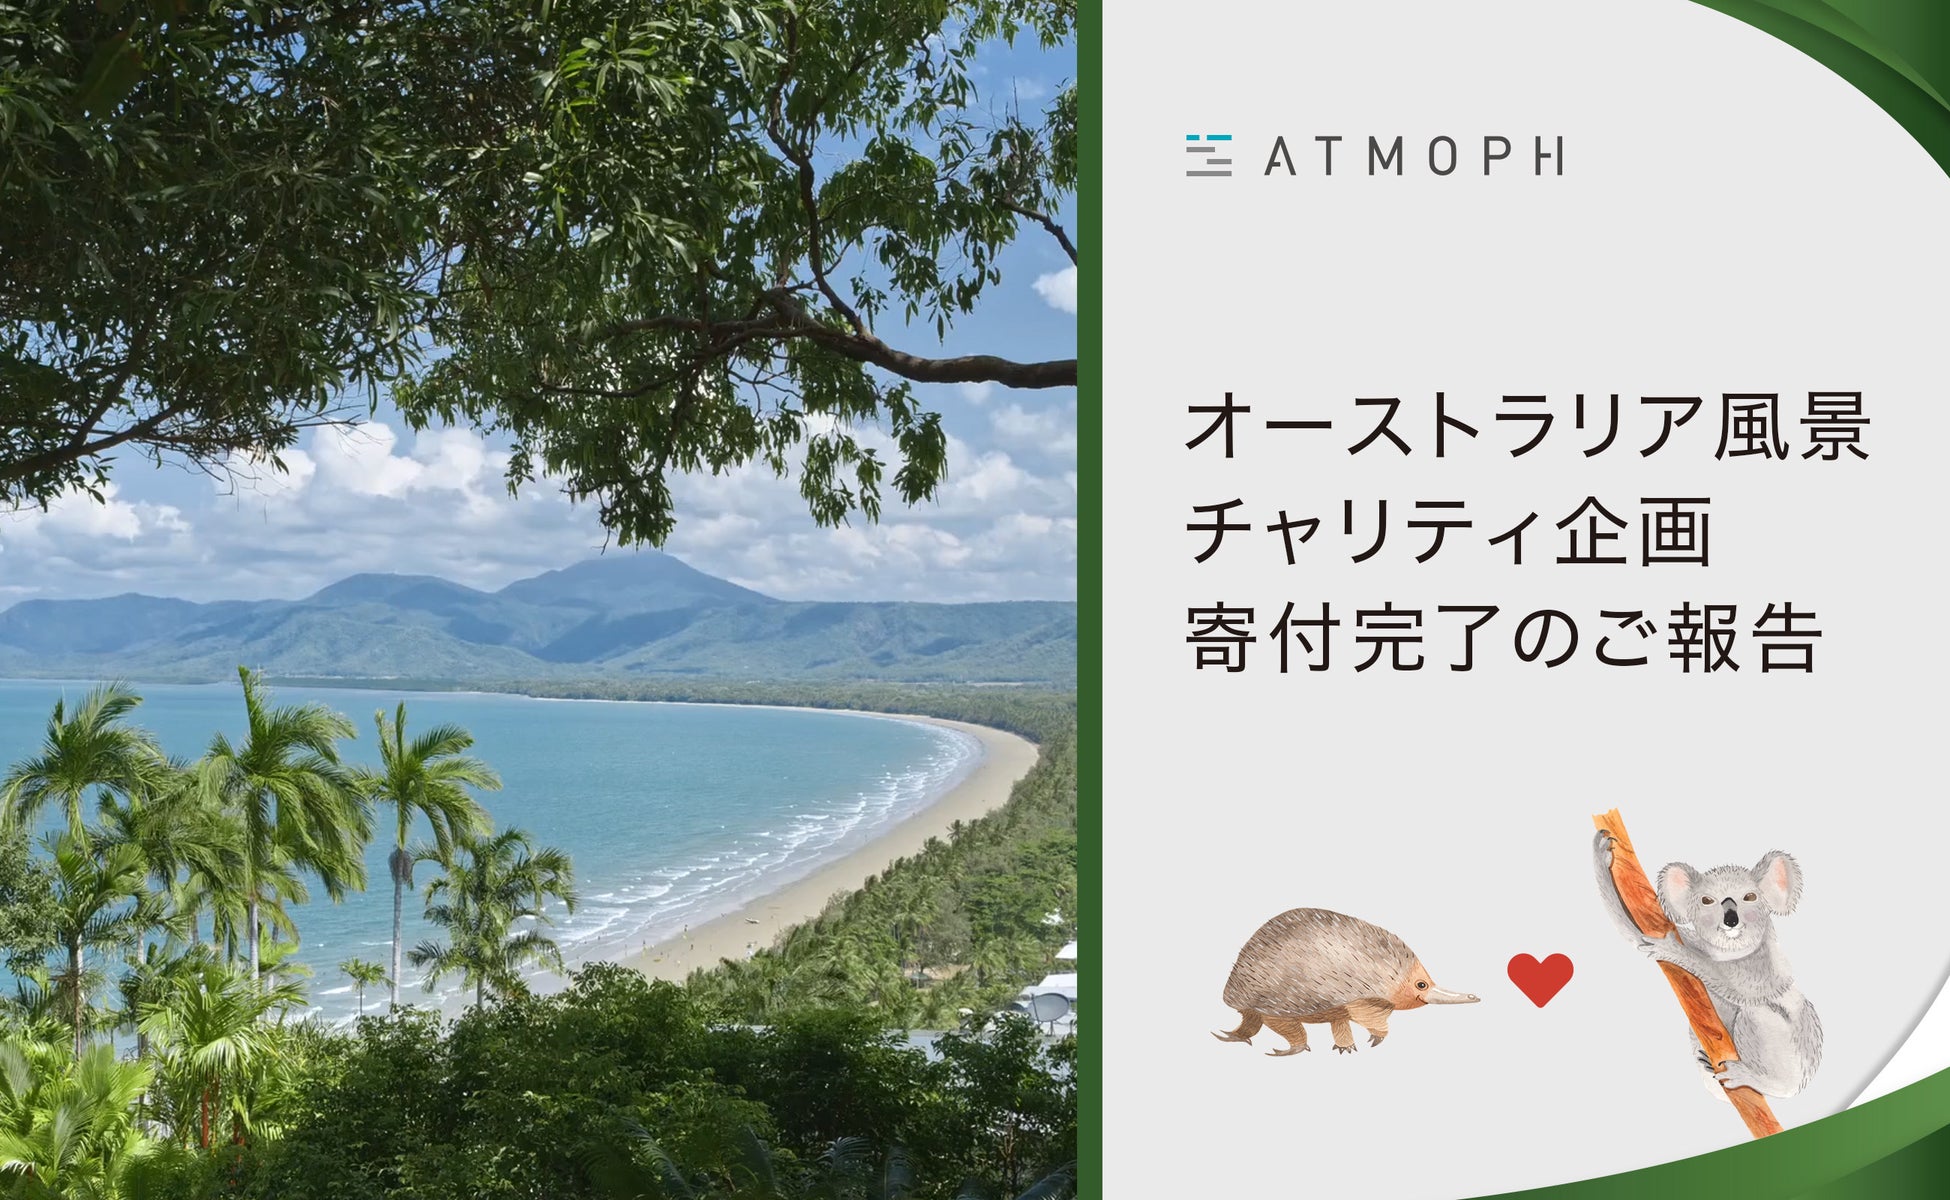 京都のスタートアップAtmophがユーザー参加型チャリティを実施。56,922円を環境保全団体に寄付のサブ画像1